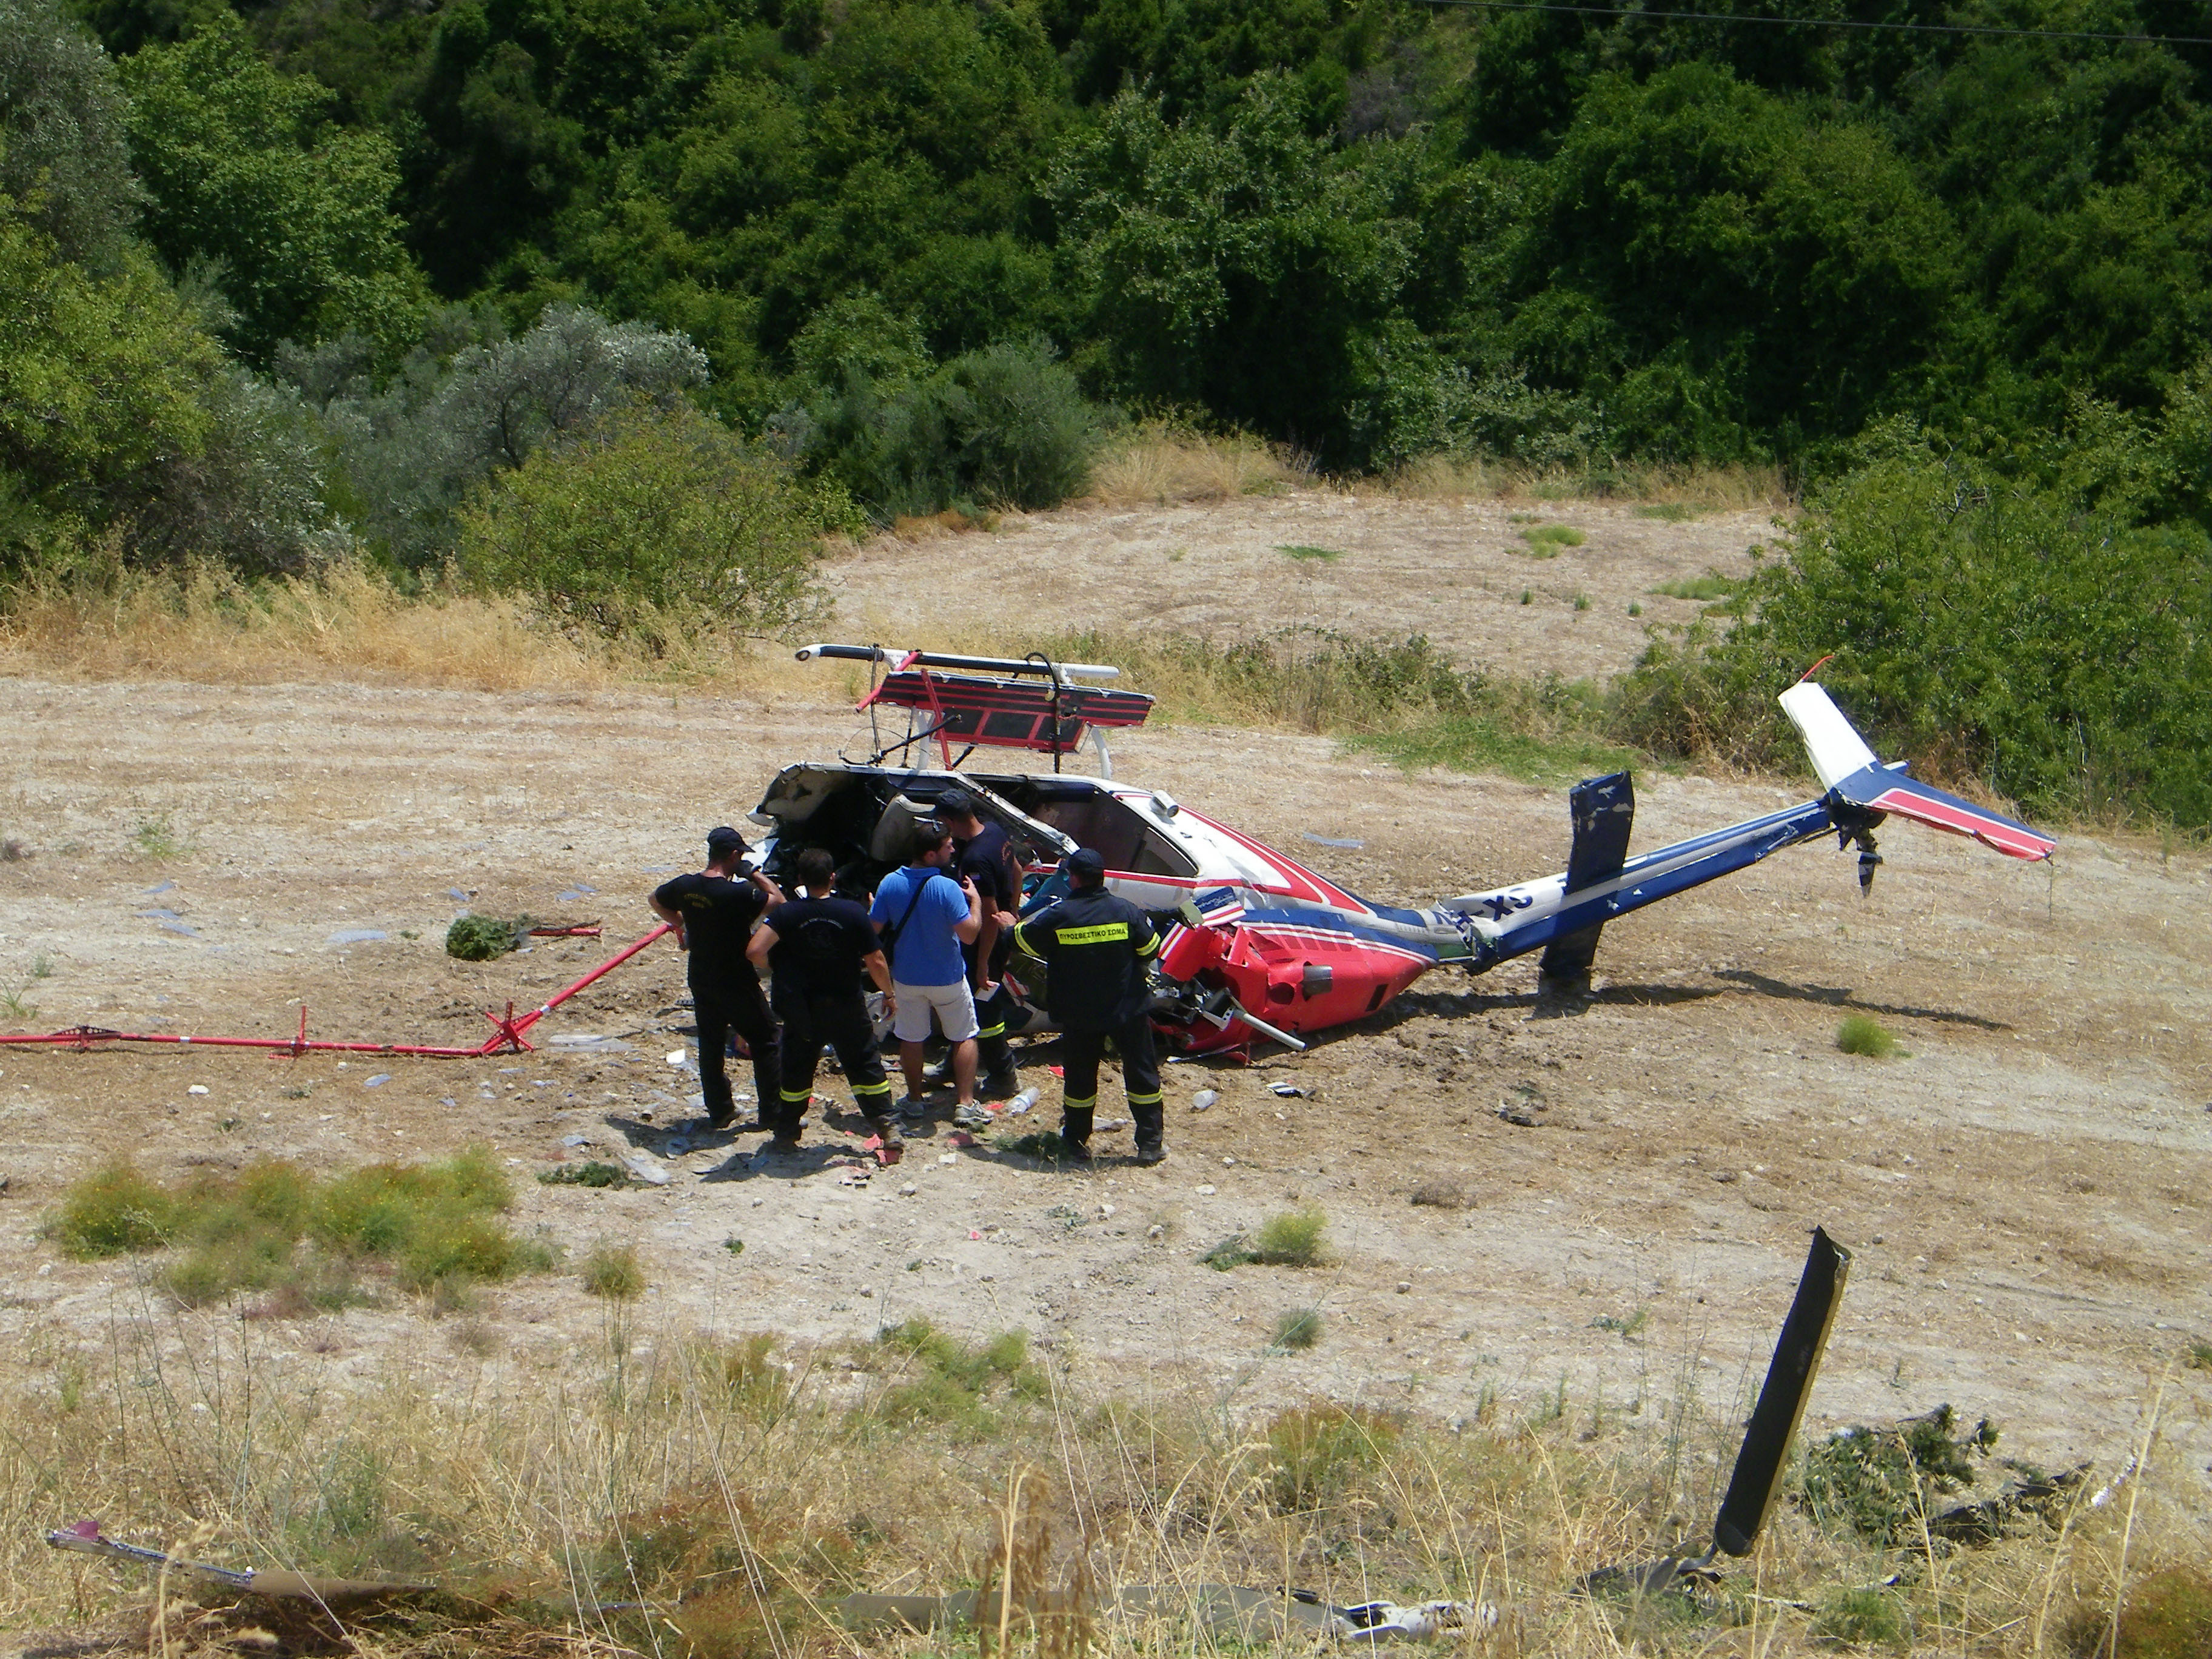 <b>Ρέθυμνο</b>Σοβαρή η κατάσταση της υγείας των δύο επιβαινόντων στο ελικόπτερο